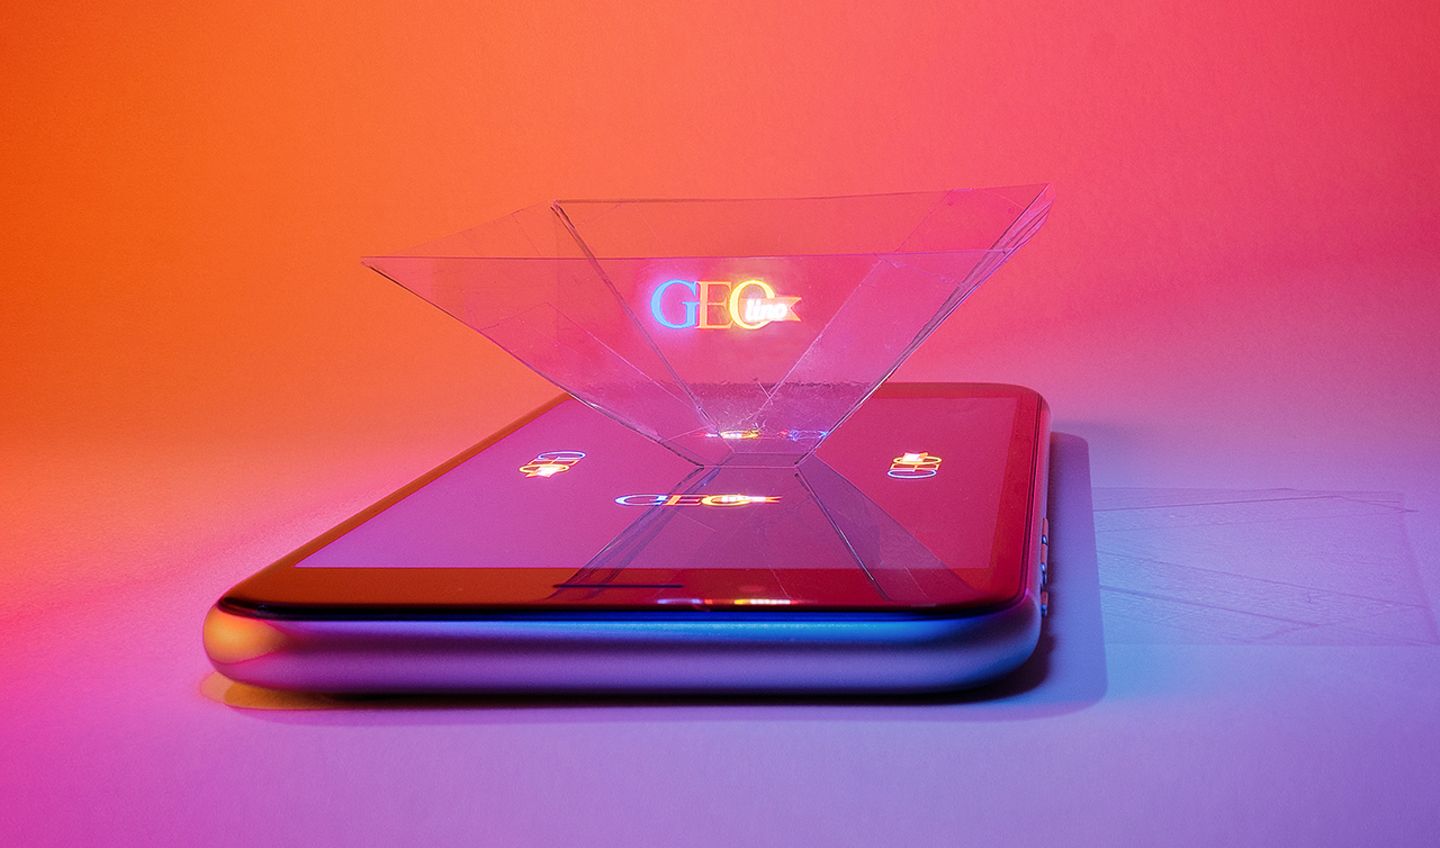 Hologramm Projektor mit einem Smartphone